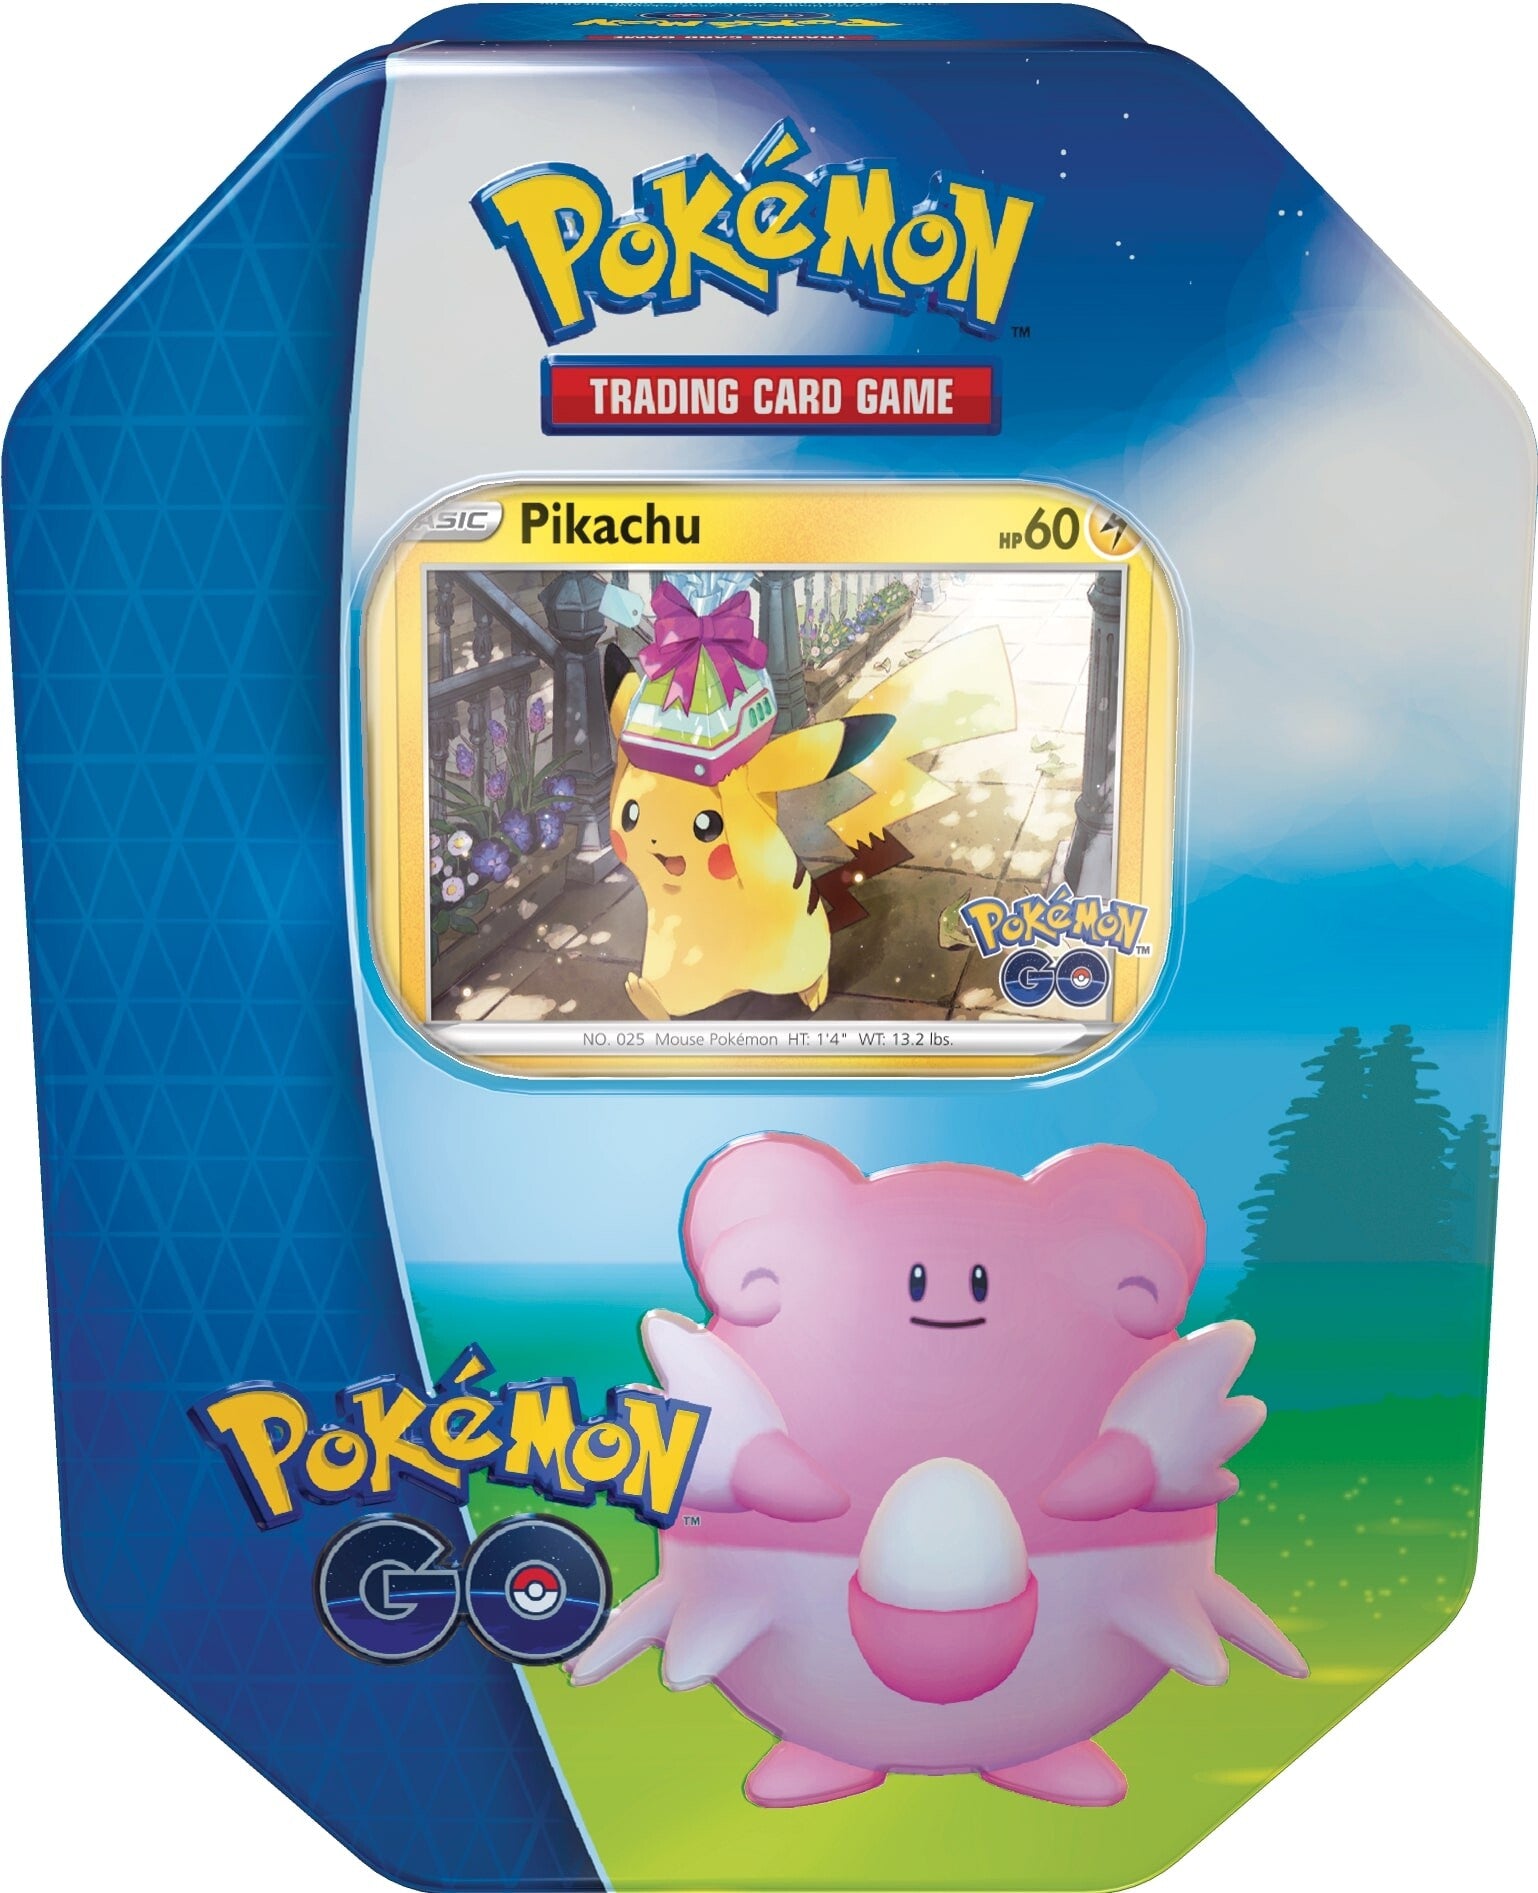 Pokémon TCG: Pokémon GO Gift Tins & Cases